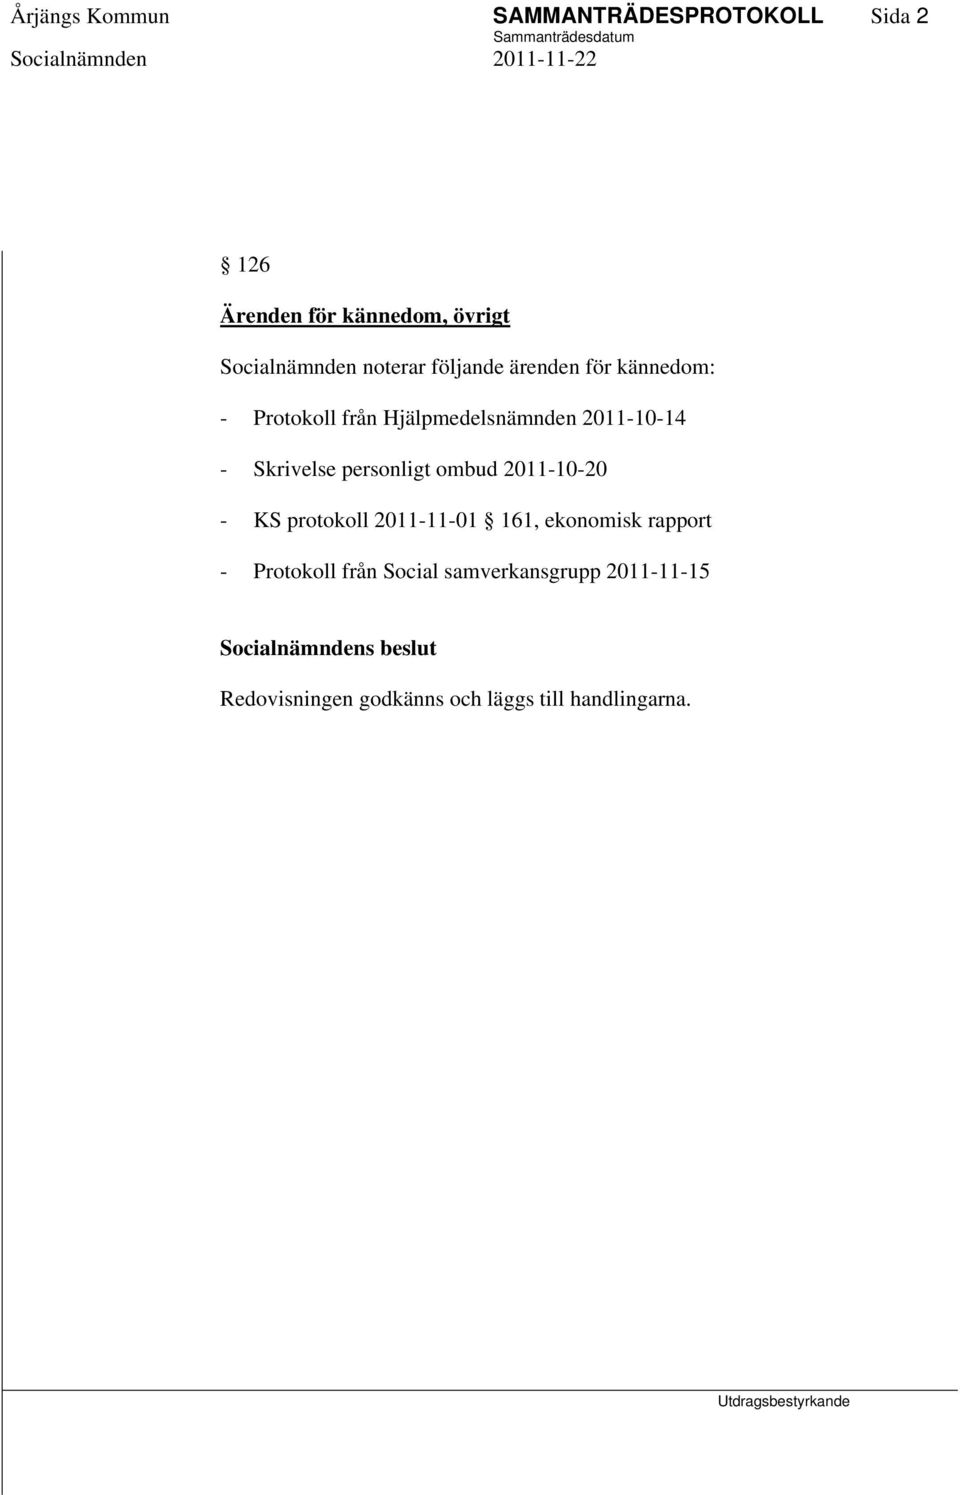 personligt ombud 2011-10-20 - KS protokoll 2011-11-01 161, ekonomisk rapport - Protokoll från